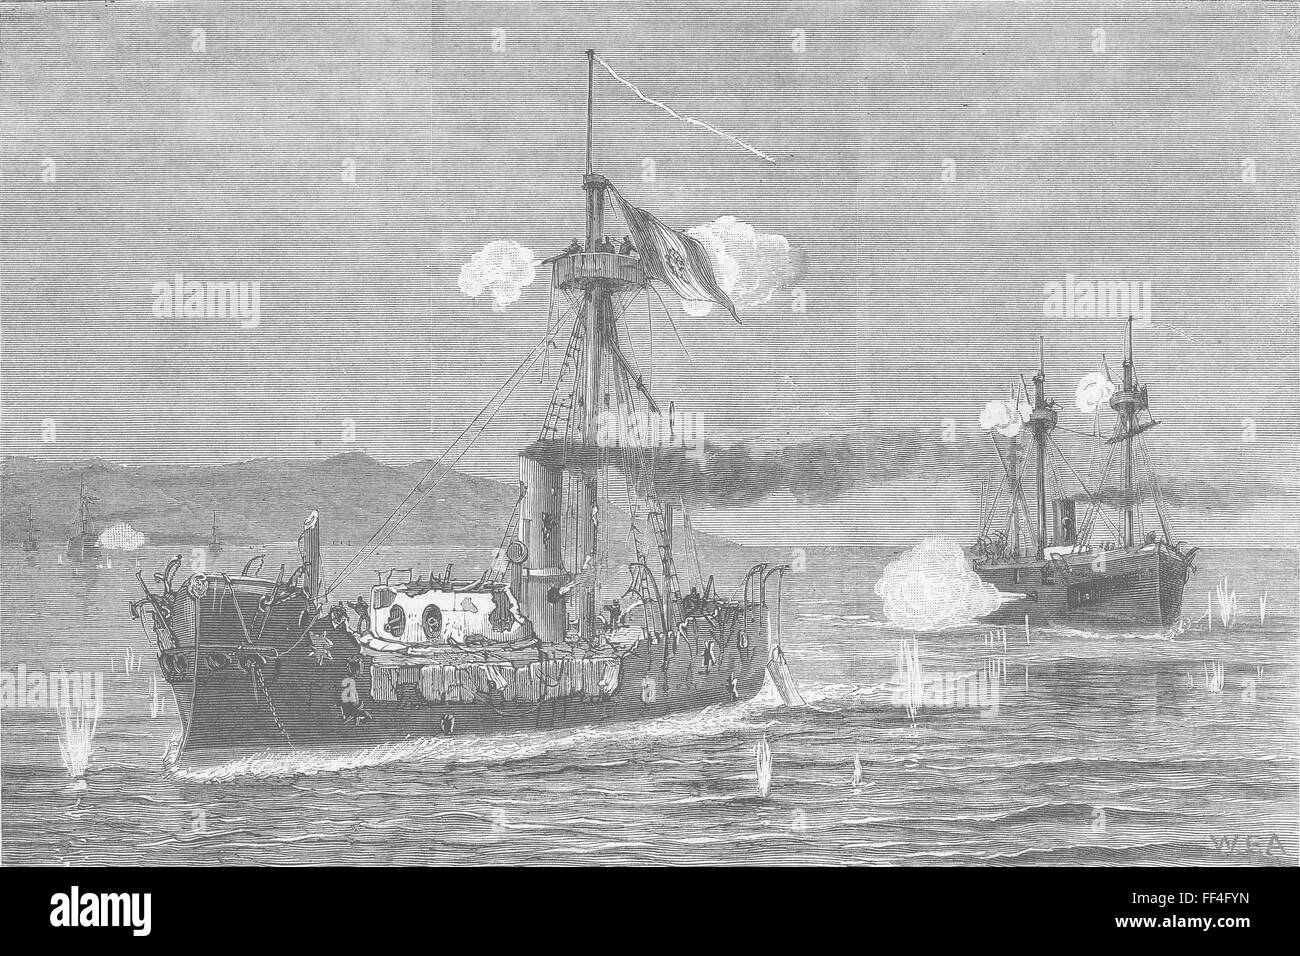 CHILE/PERU War of Pacific Sea battle, Mejillones 1879. The Graphic Stock Photo